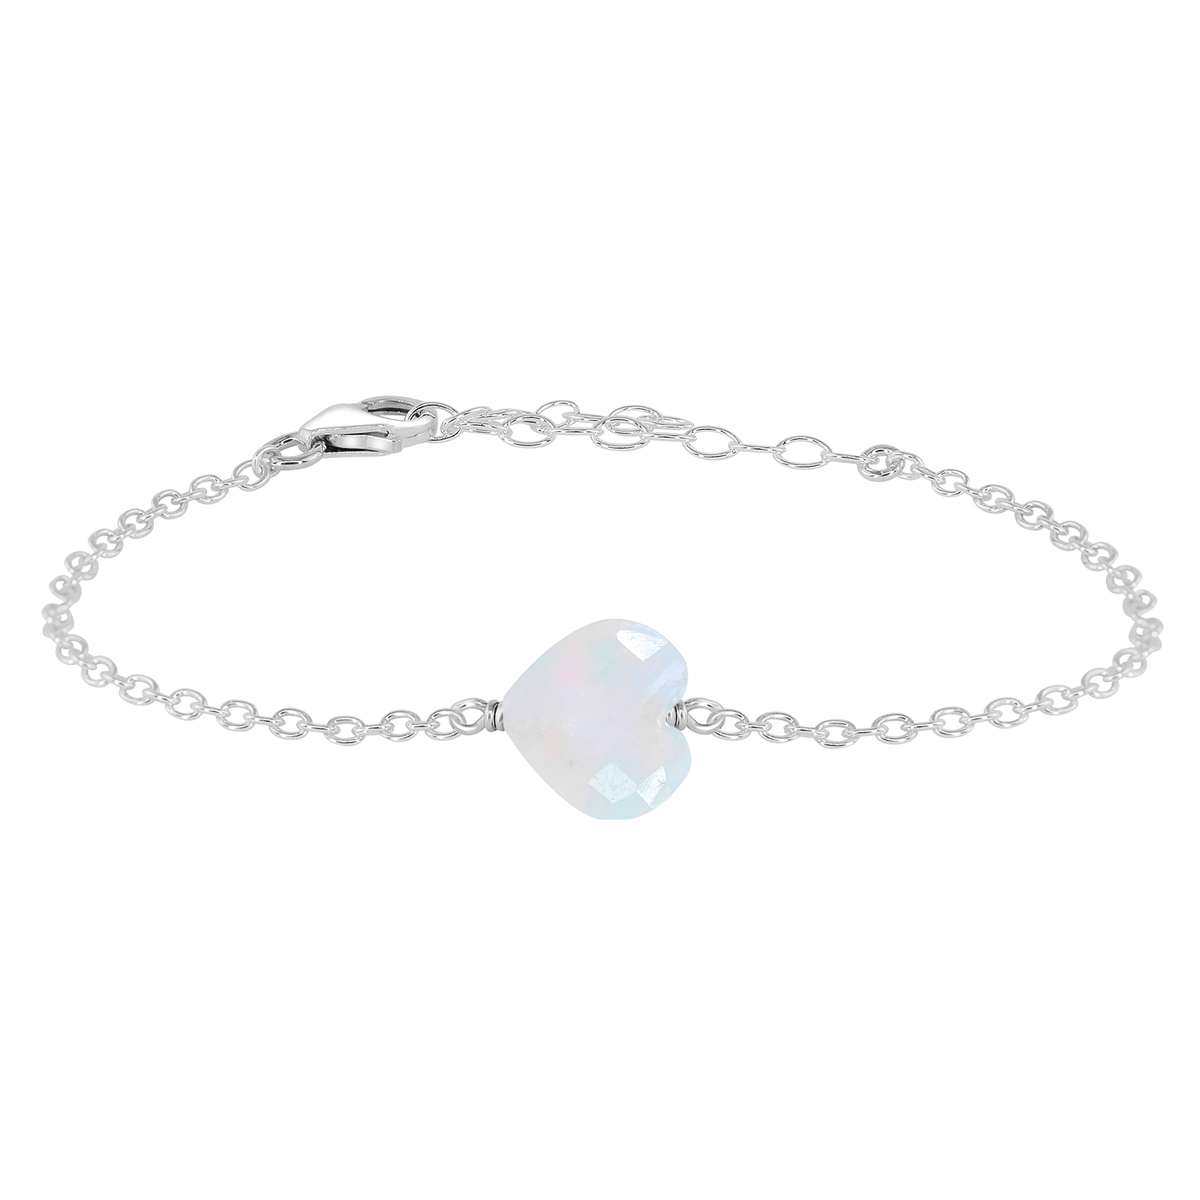 Rainbow Moonstone Crystal Heart Bracelet - Rainbow Moonstone Crystal Heart Bracelet - Sterling Silver - Luna Tide Handmade Crystal Jewellery